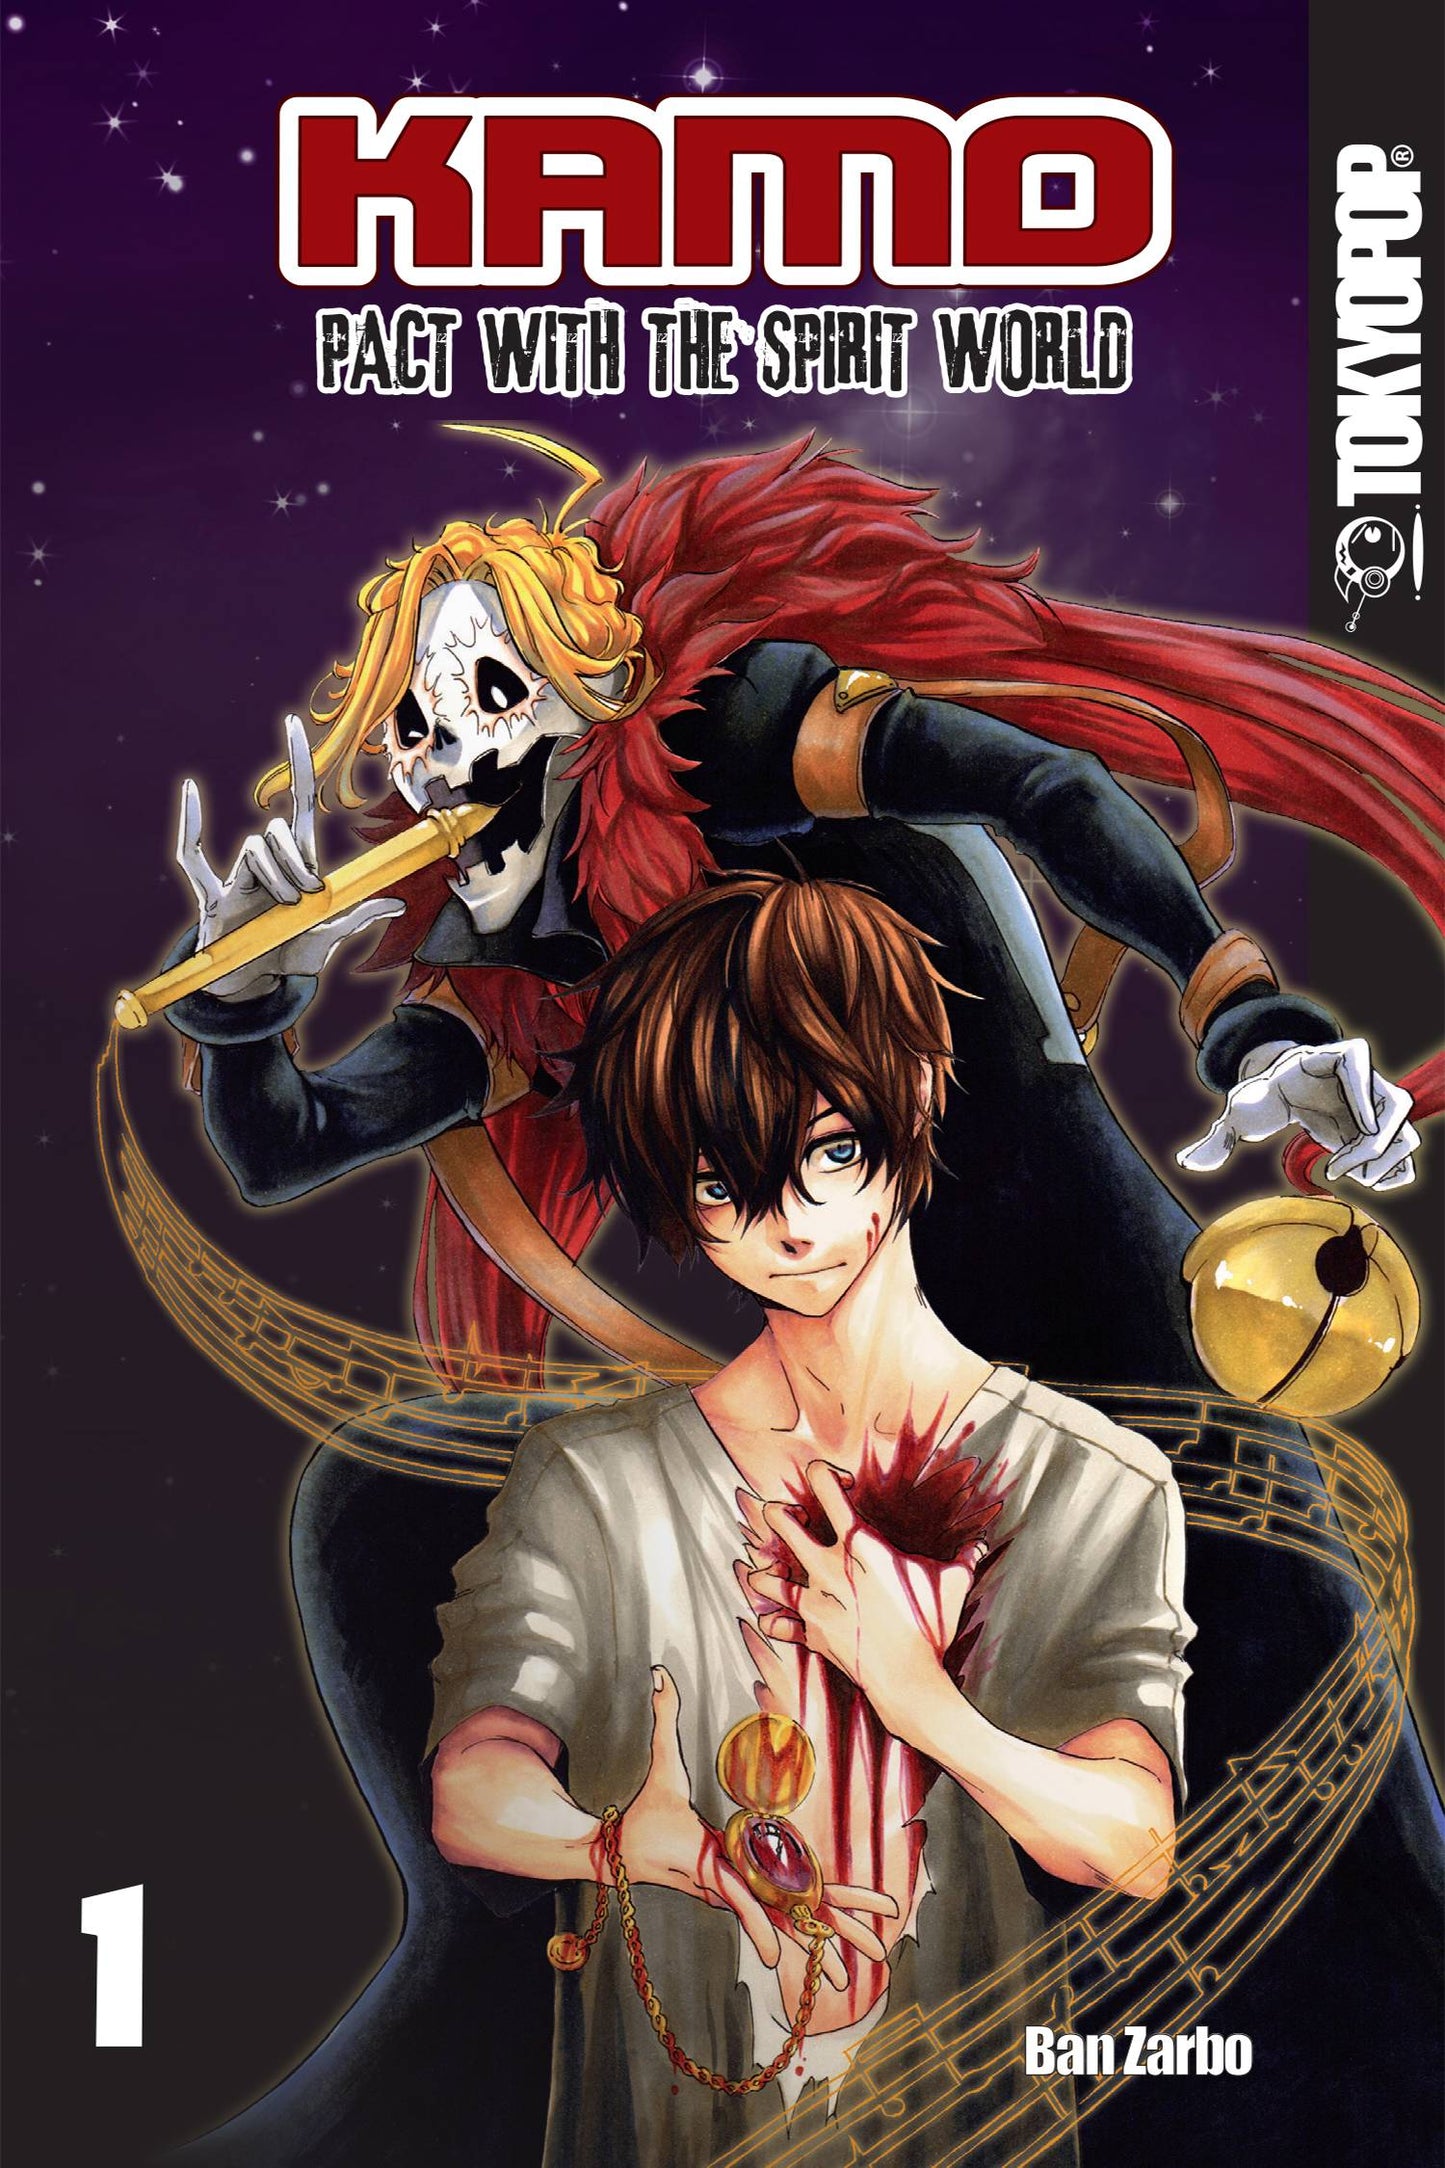 Kamo Manga Vol. 01 Pact With The Spirit World